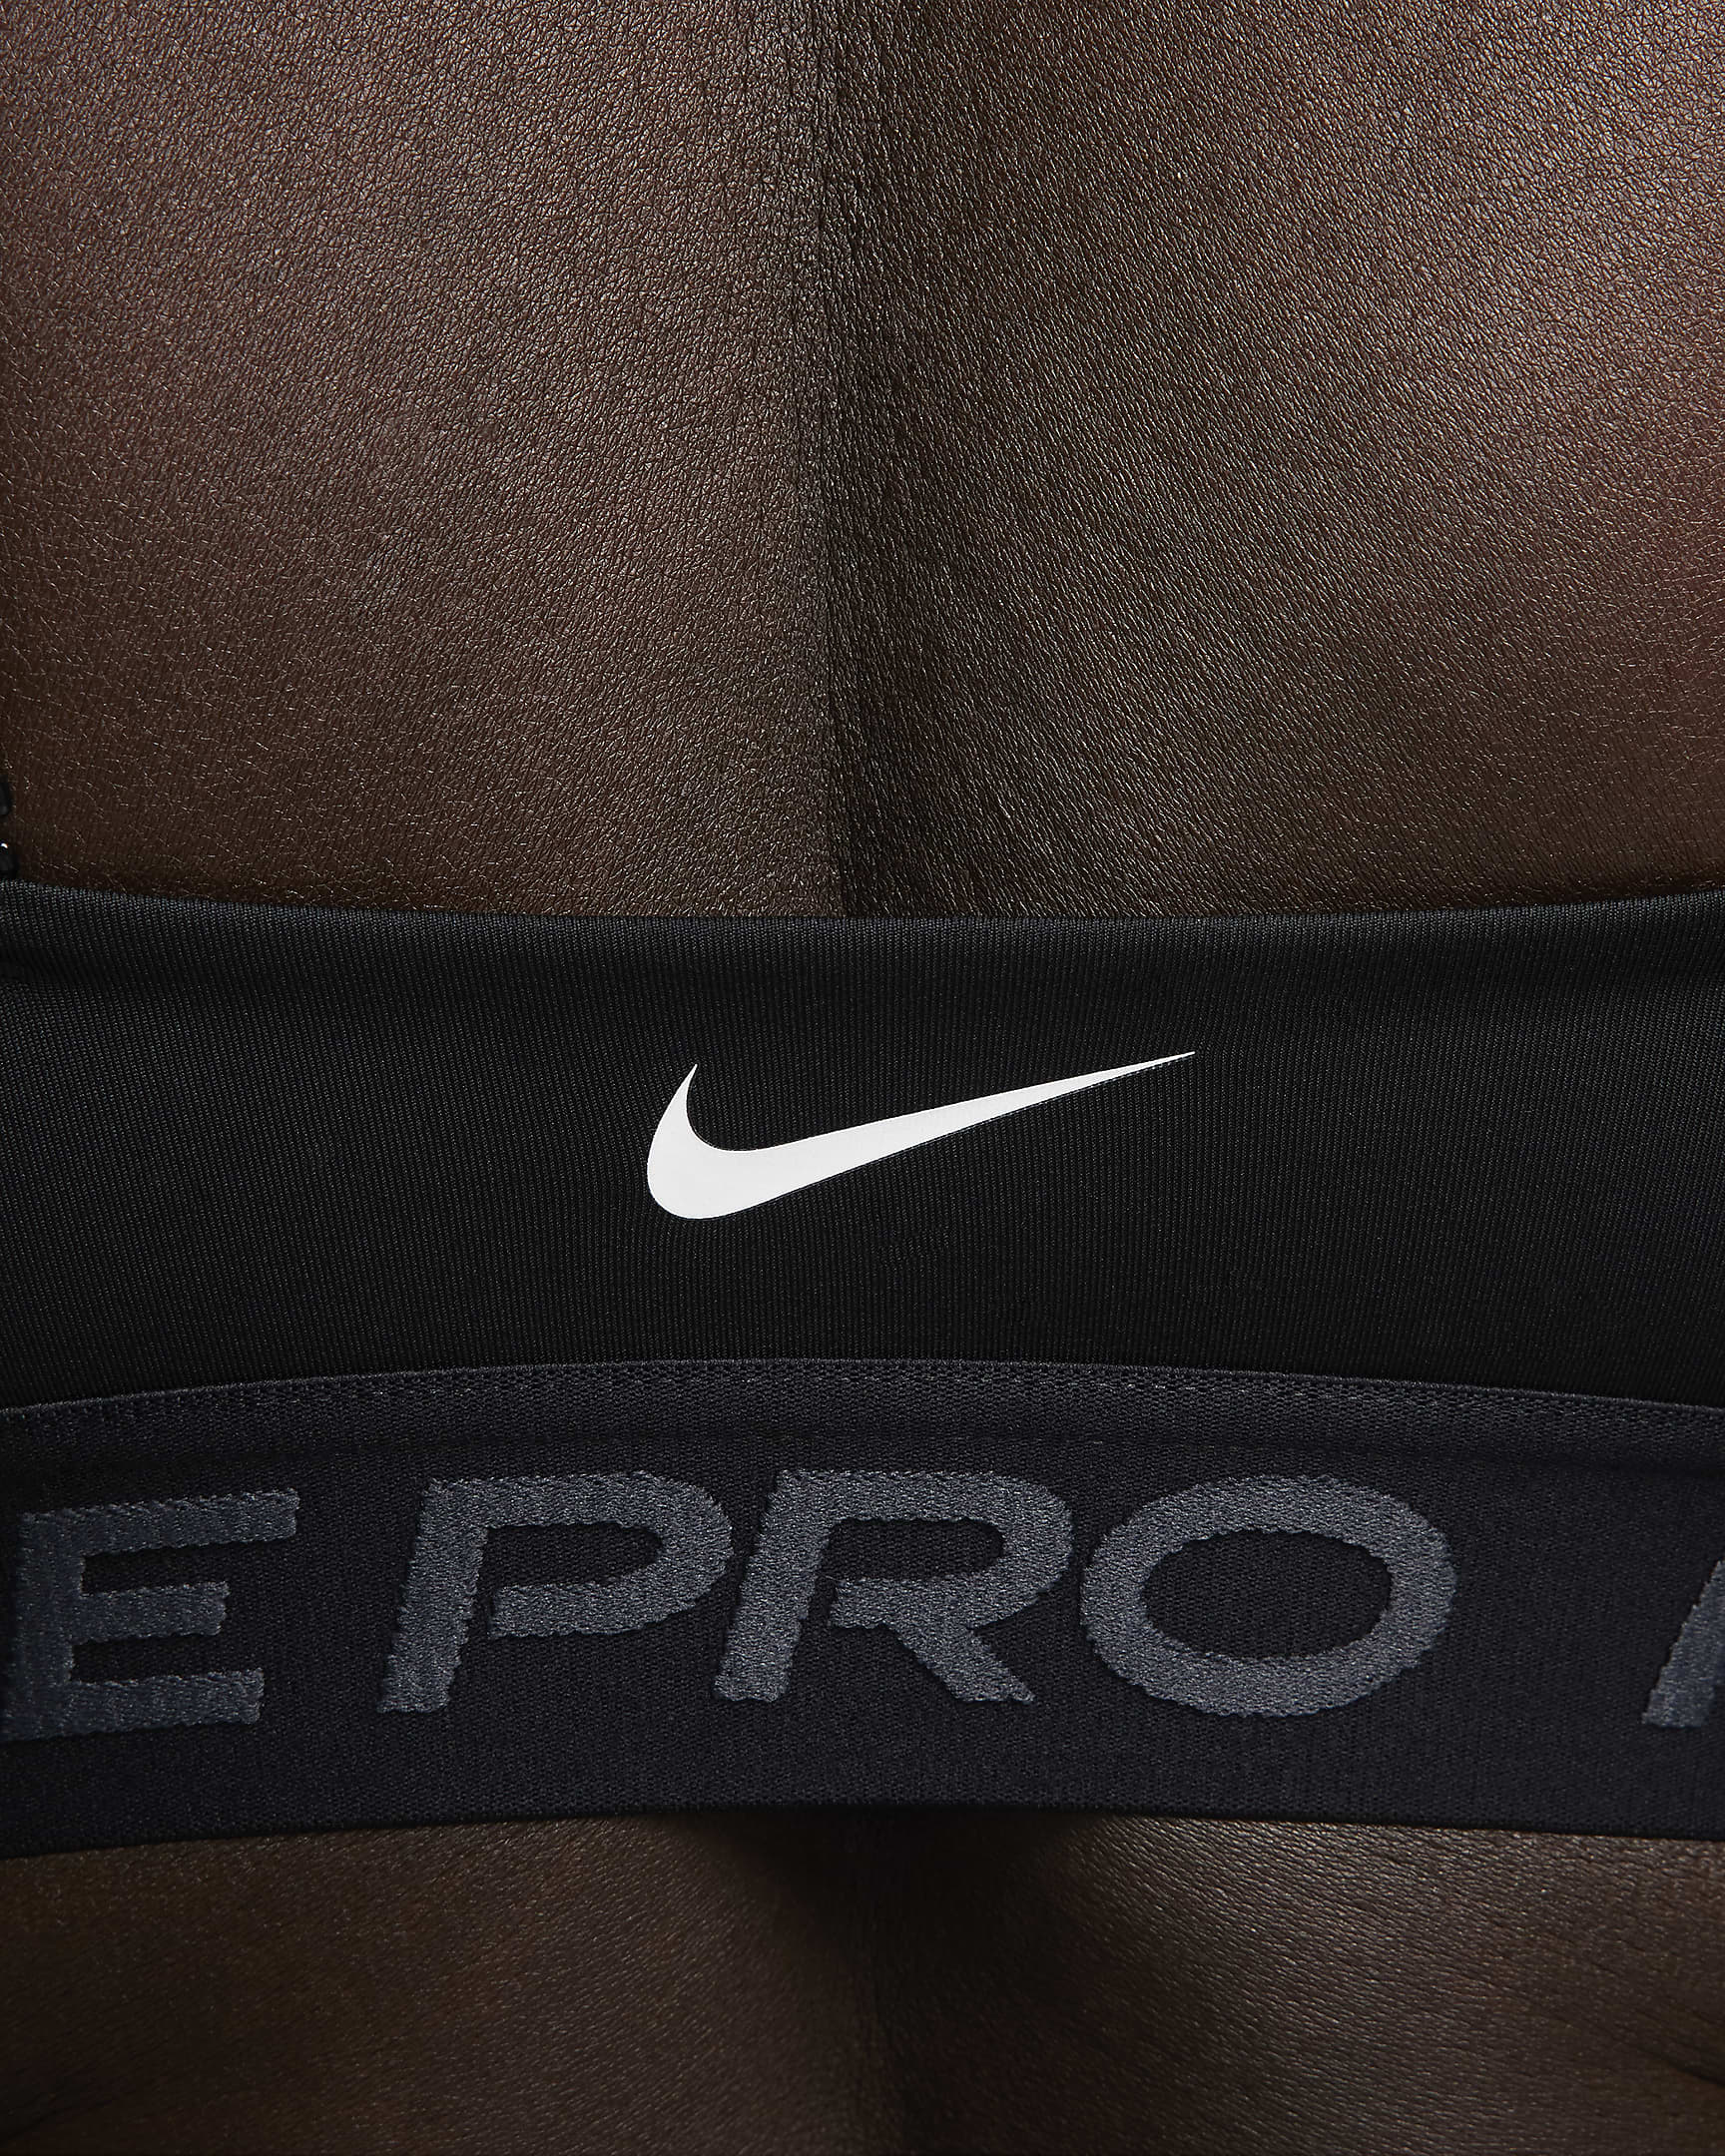 Dámská sportovní podprsenka Nike Pro Indy Plunge s vycpávkami a střední oporou - Černá/Anthracite/Bílá